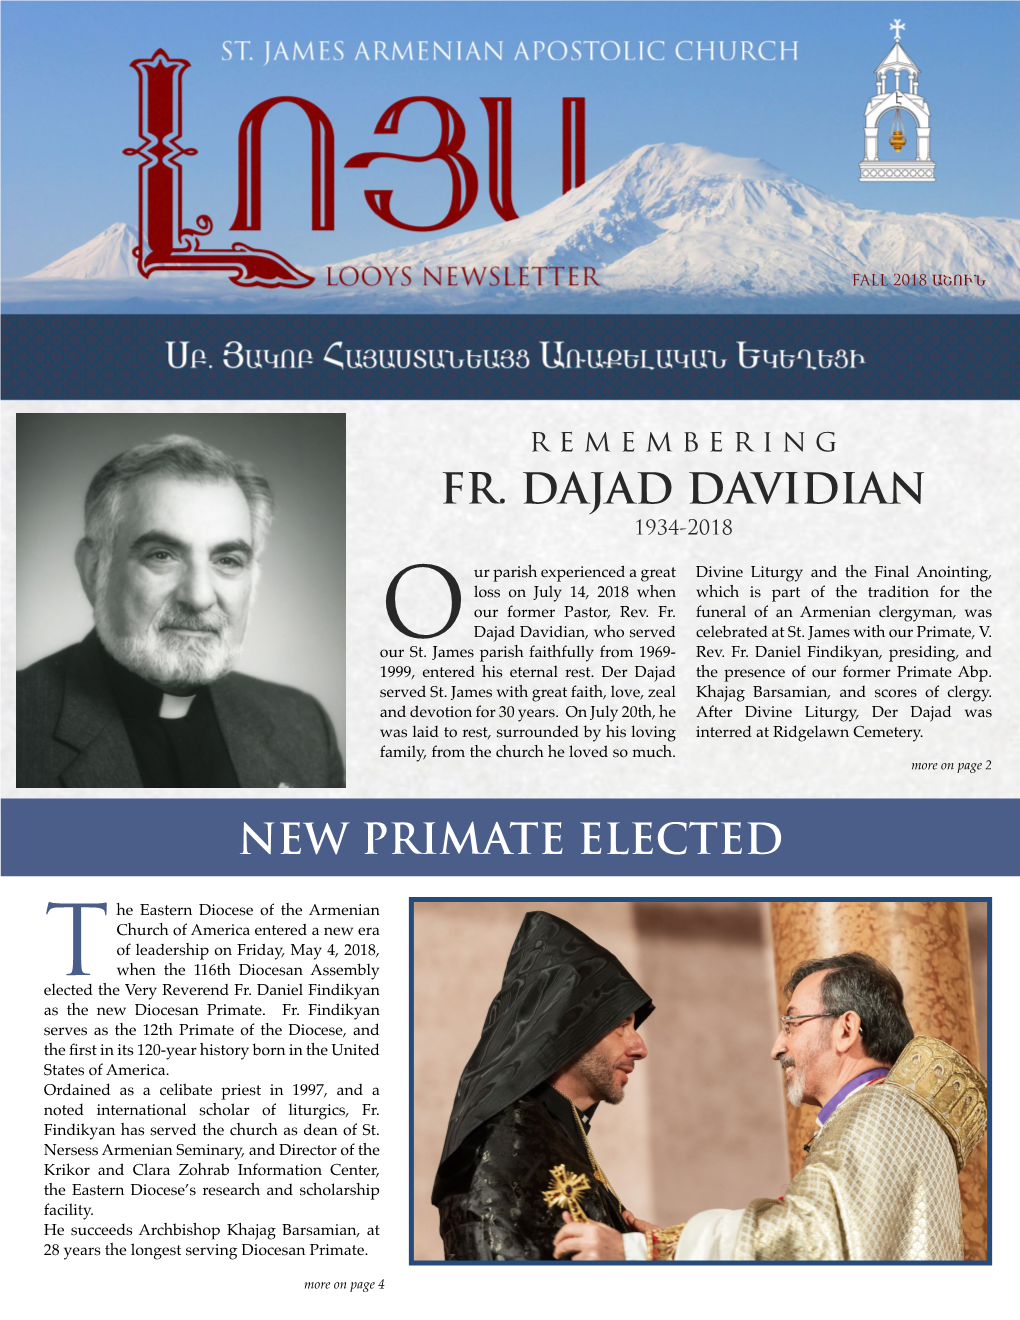 New Primate Elected Fr. Dajad Davidian